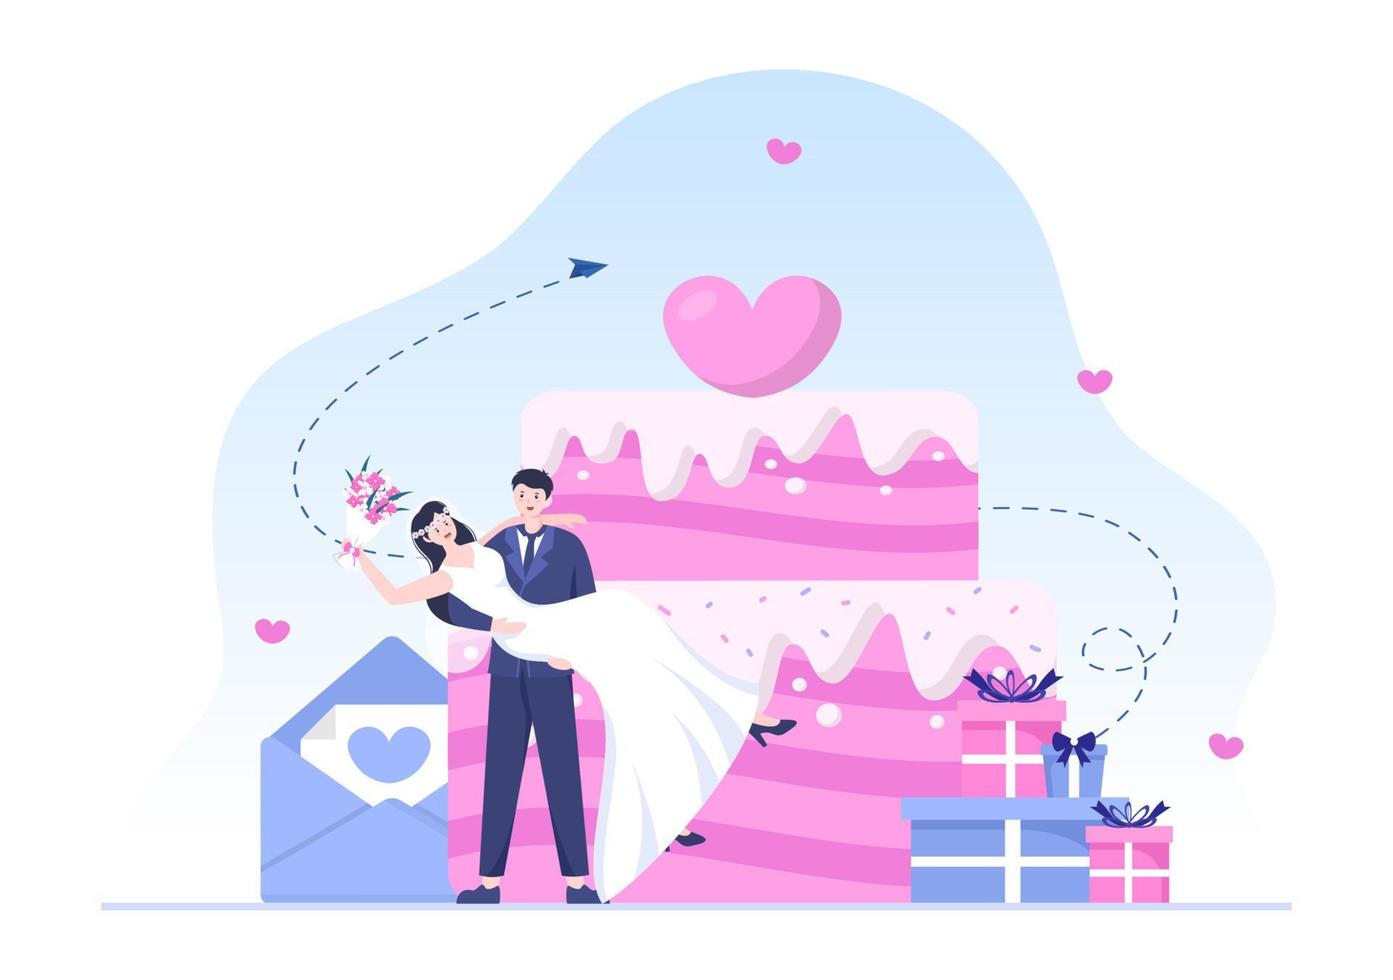 organizzatore di matrimoni che fornisce un servizio di decorazione o che fa piani prima della cerimonia nuziale in un'illustrazione piana di stile del fumetto del fondo vettore